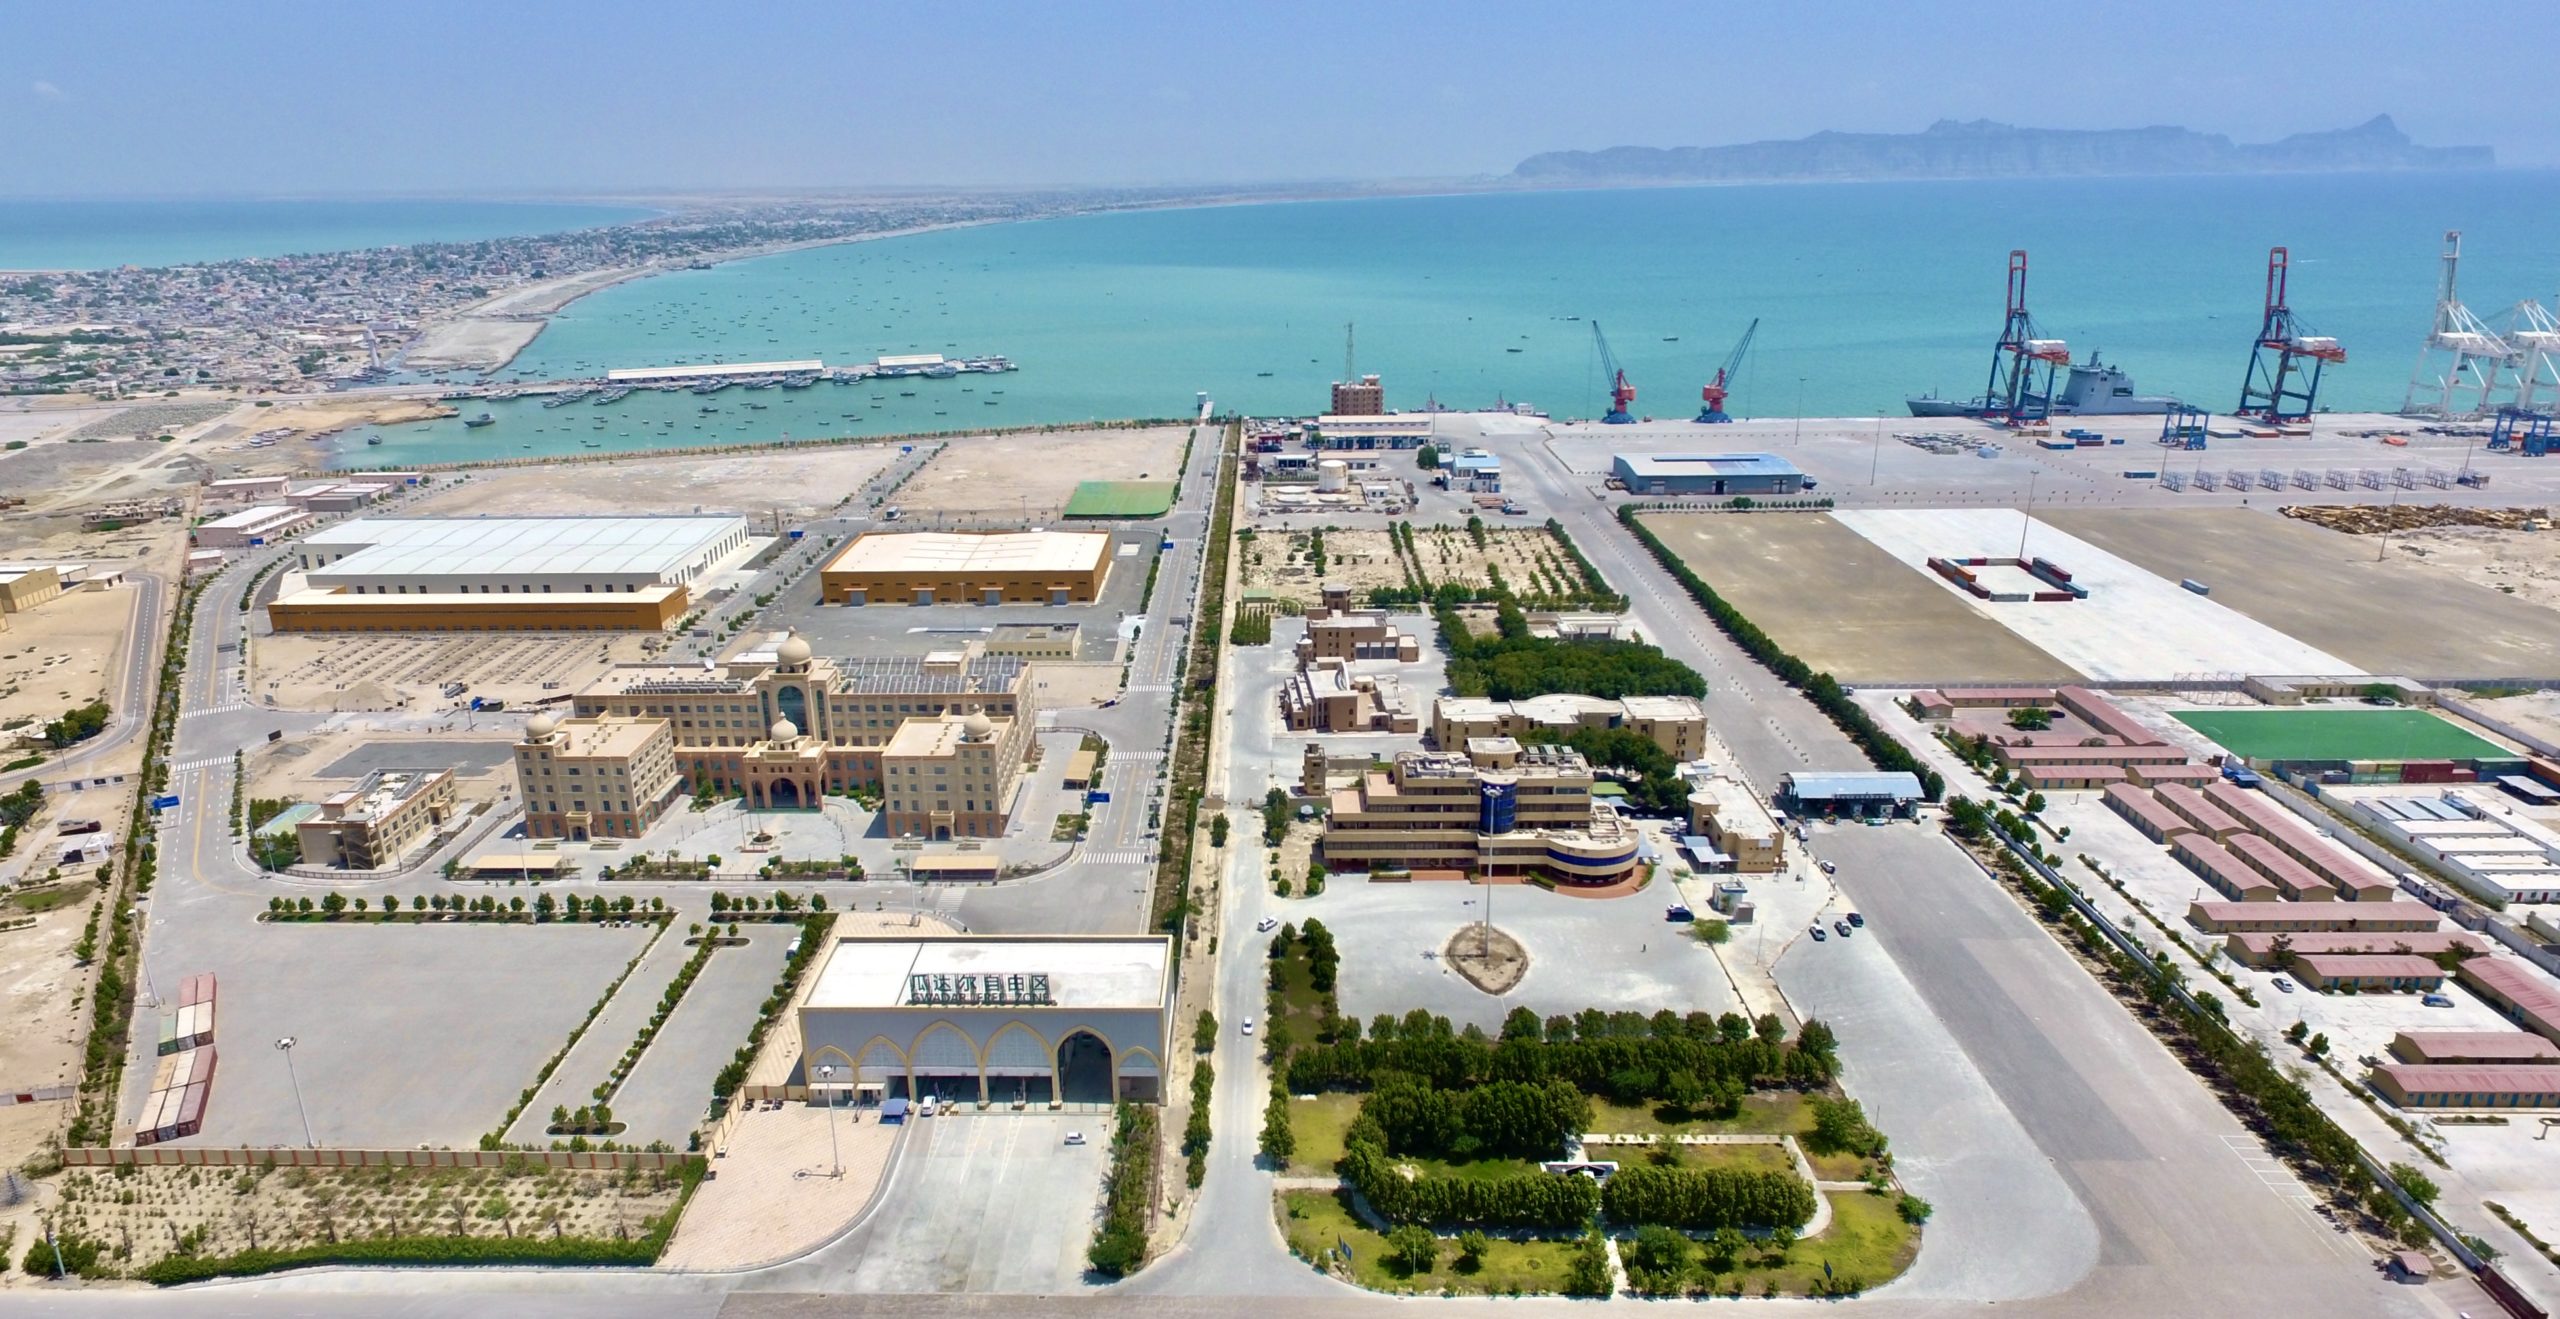 Aerial view of Gwadar port, Shabbir Ahmed